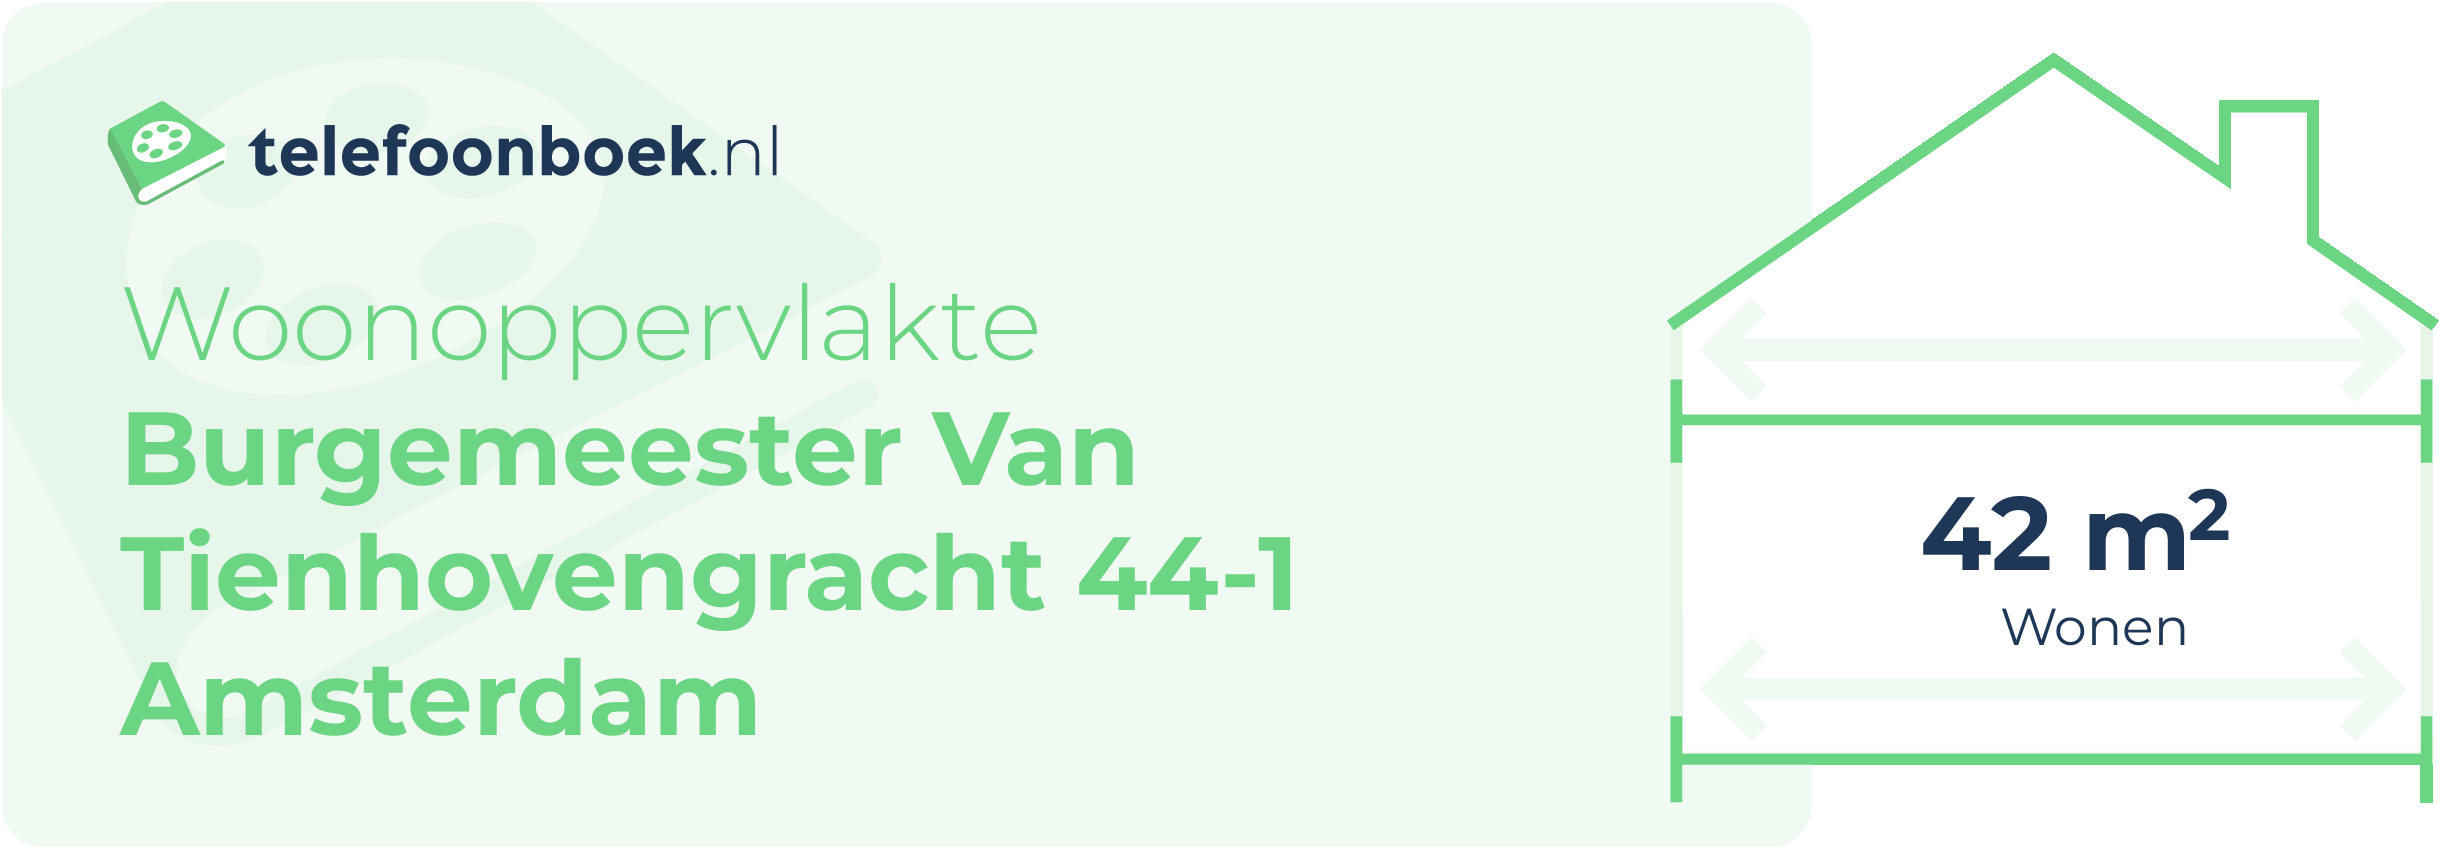 Woonoppervlakte Burgemeester Van Tienhovengracht 44-1 Amsterdam